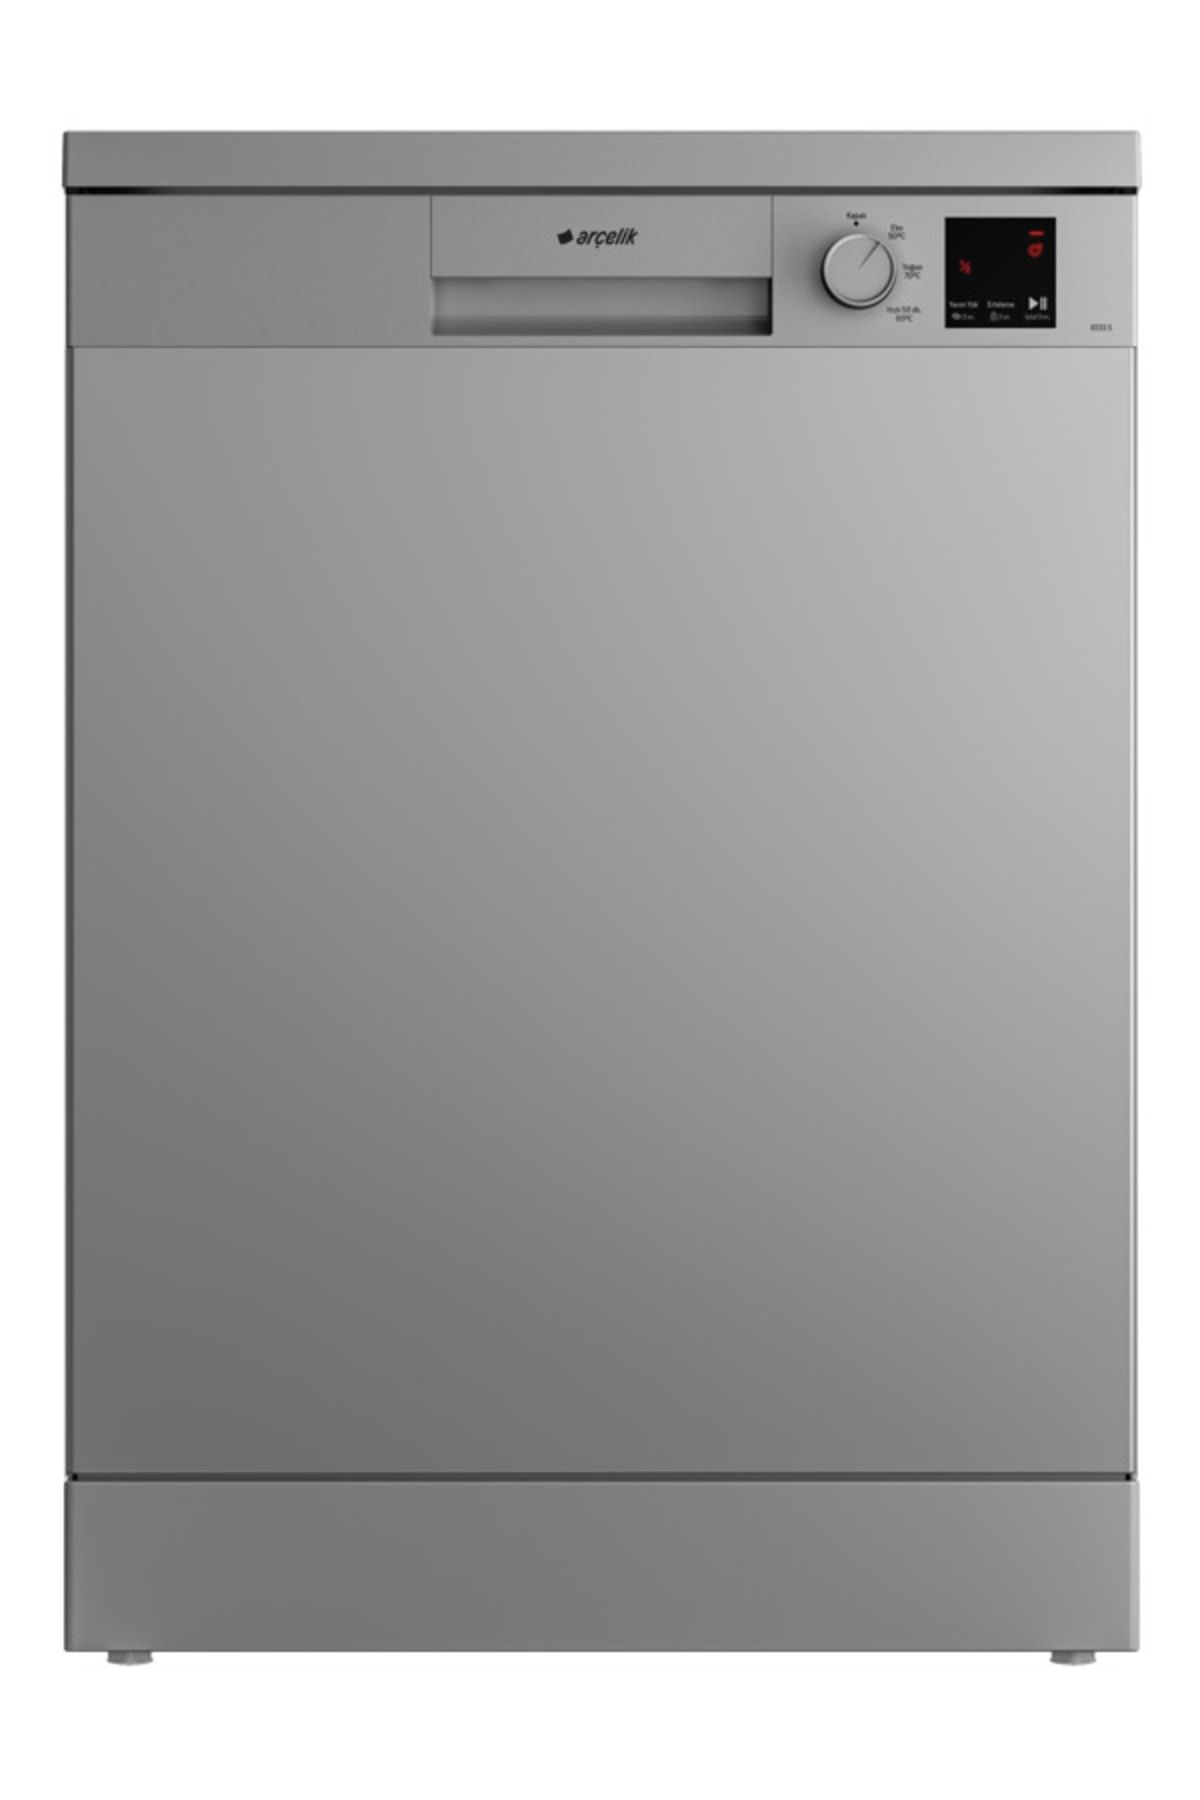 Arçelik 3 Programlı Bulaşık Makinesi, Bardak Koruma Sistemi, Gümüş Renk, 6133 S